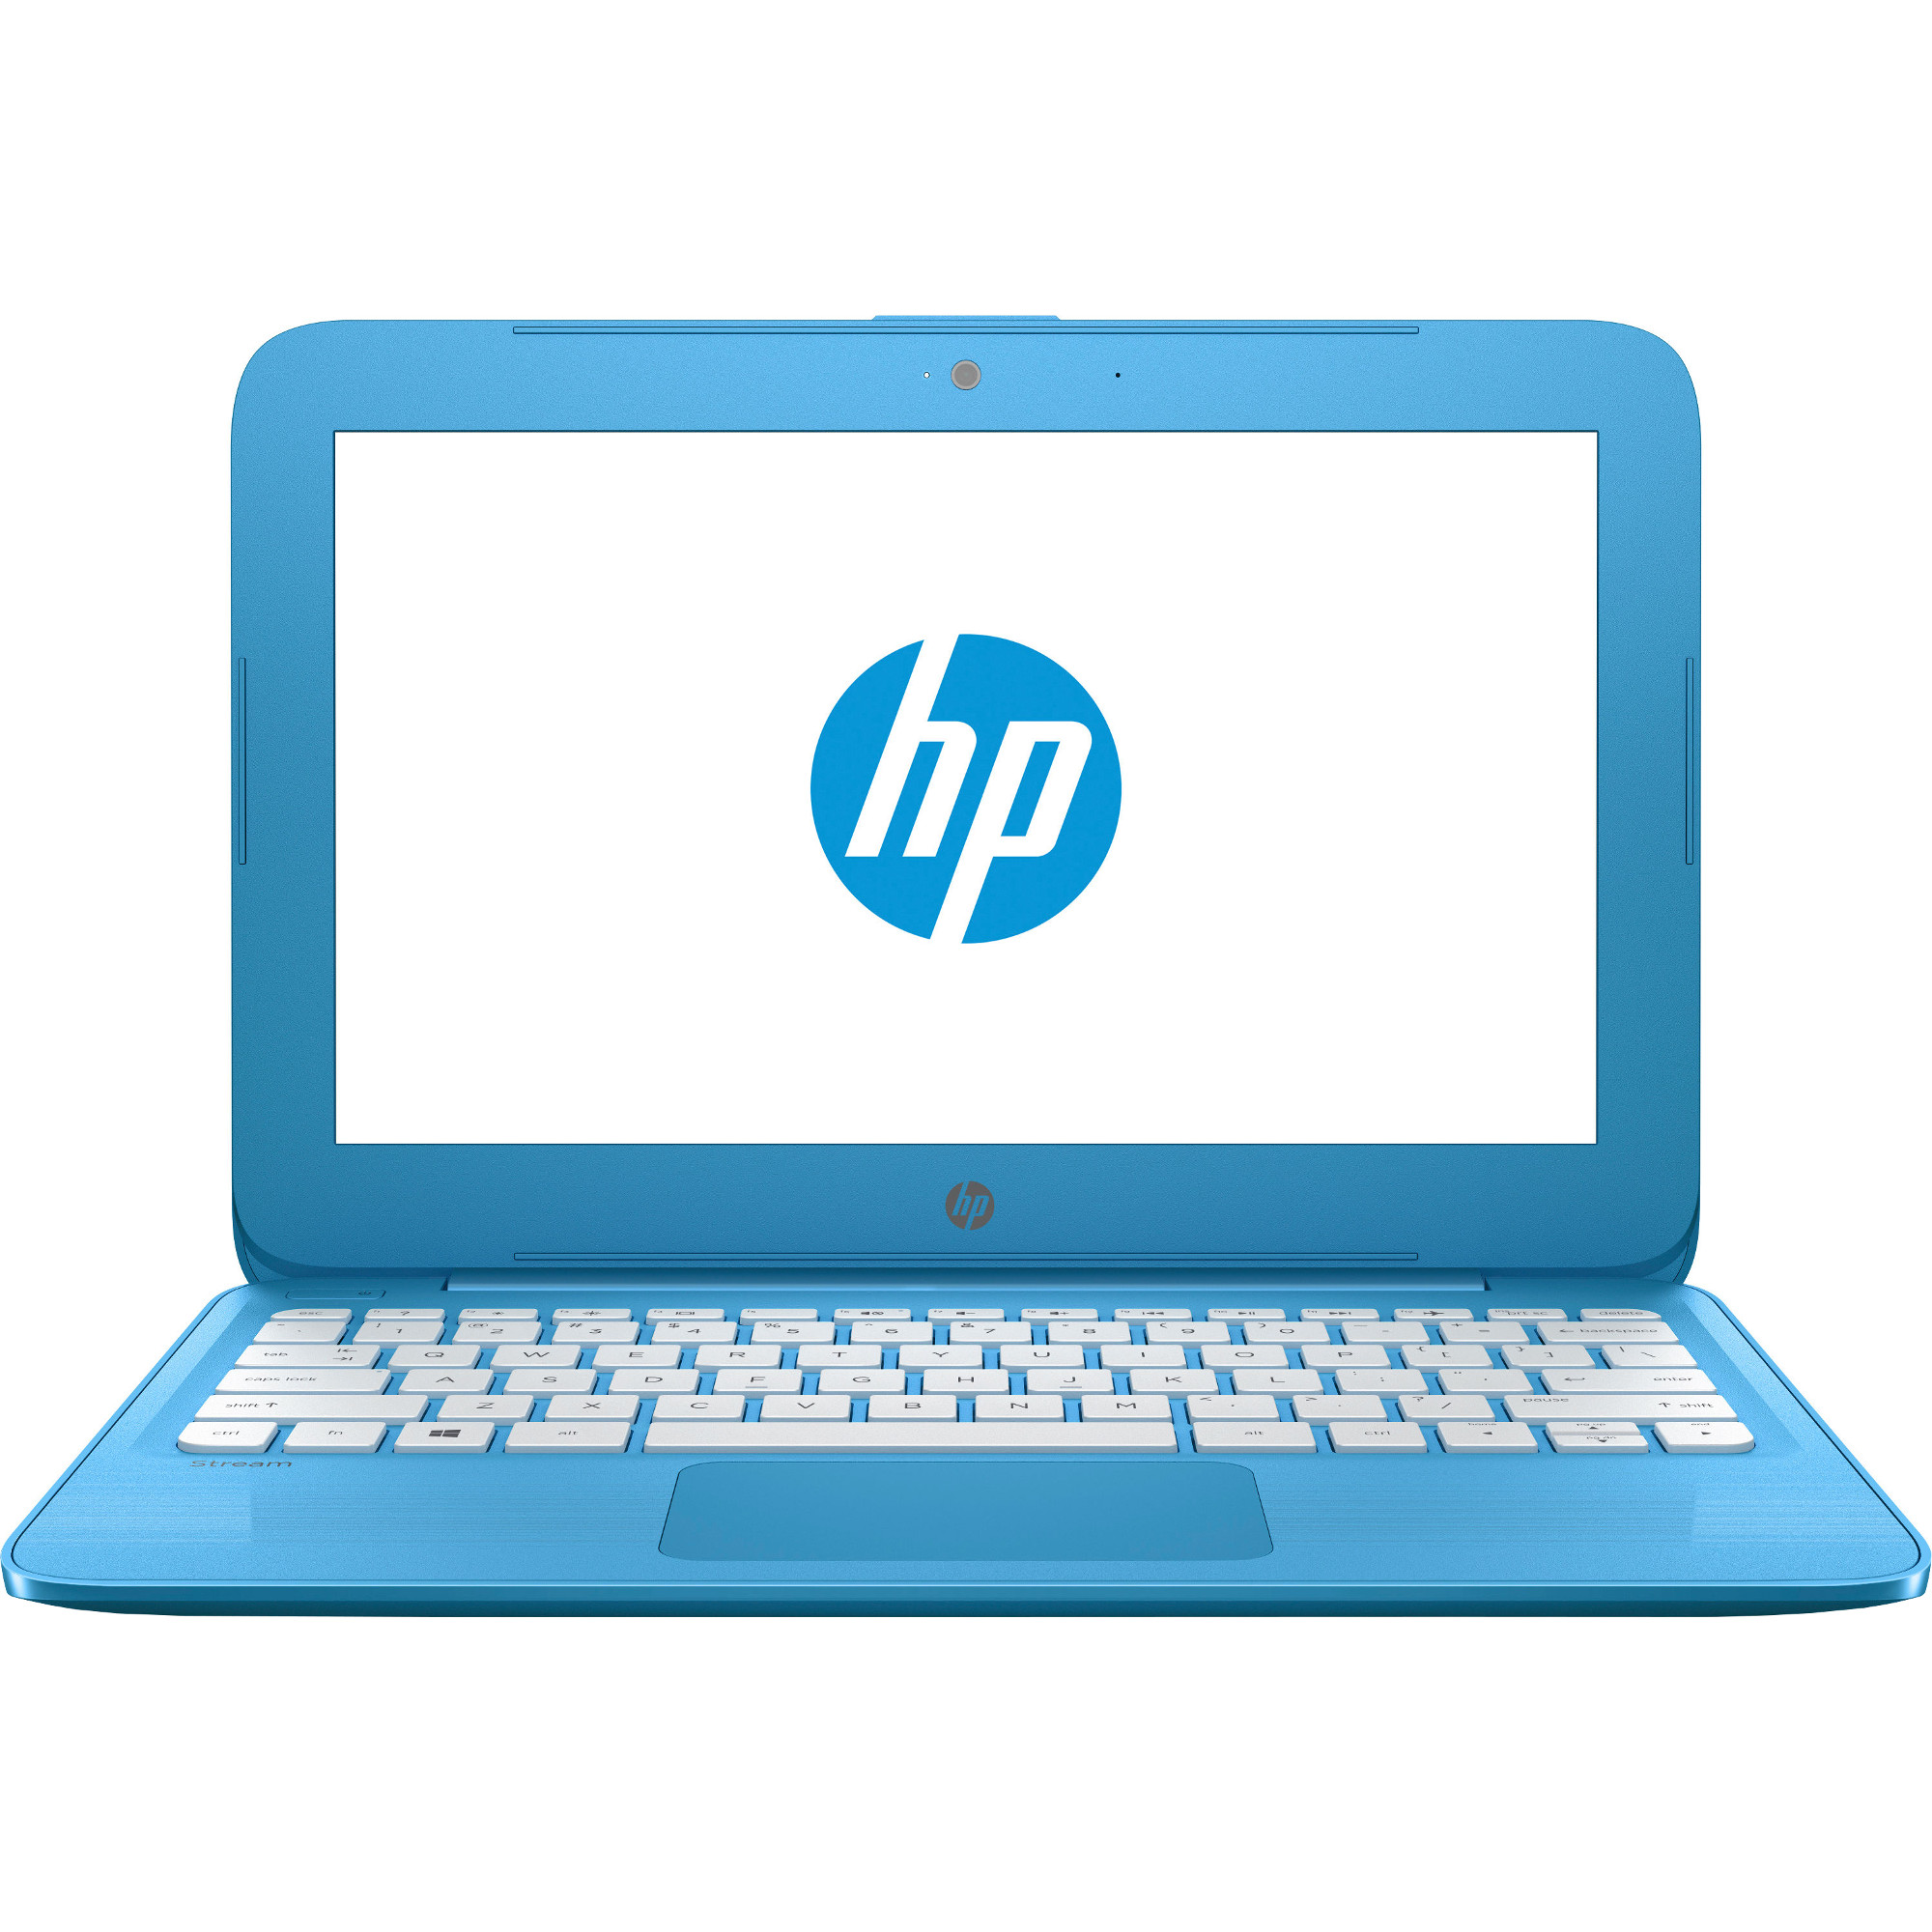 Laptop HP Stream 11-Y000NQ, Intel® Celeron® N3060, 2GB DDR3, eMMC 32GB, Intel® HD Graphics, Windows 10 Home